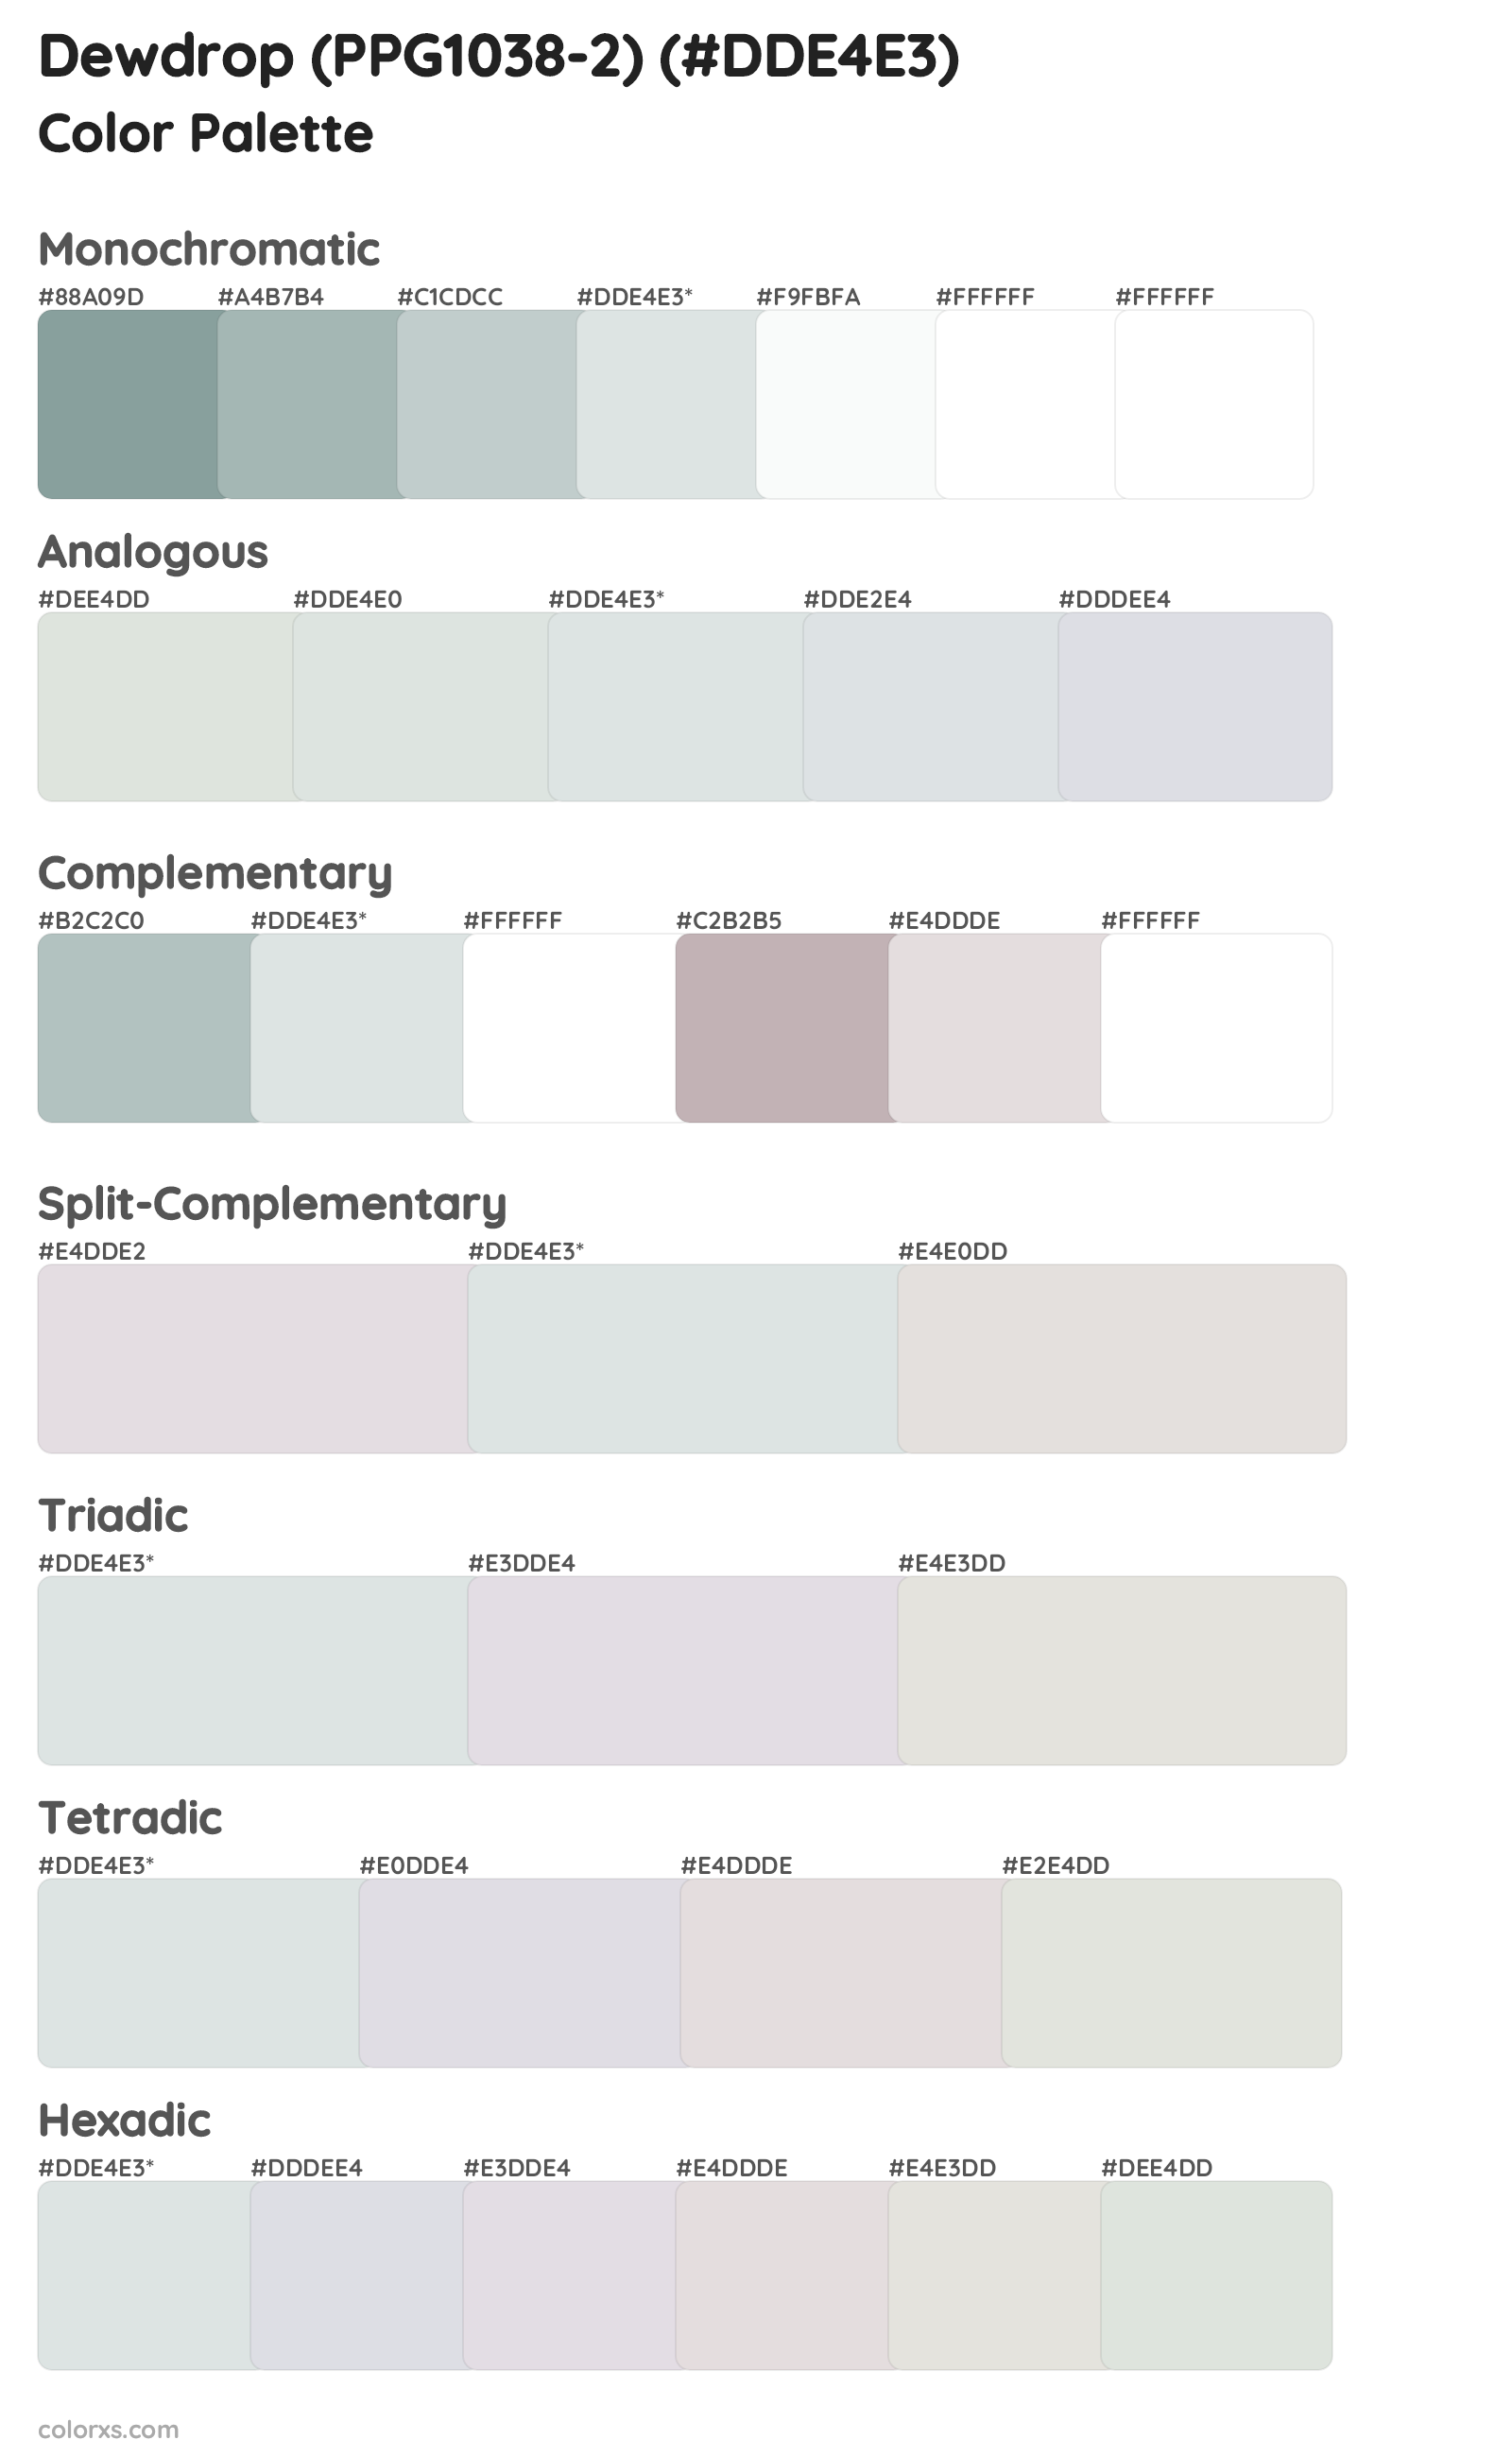 Dewdrop (PPG1038-2) Color Scheme Palettes